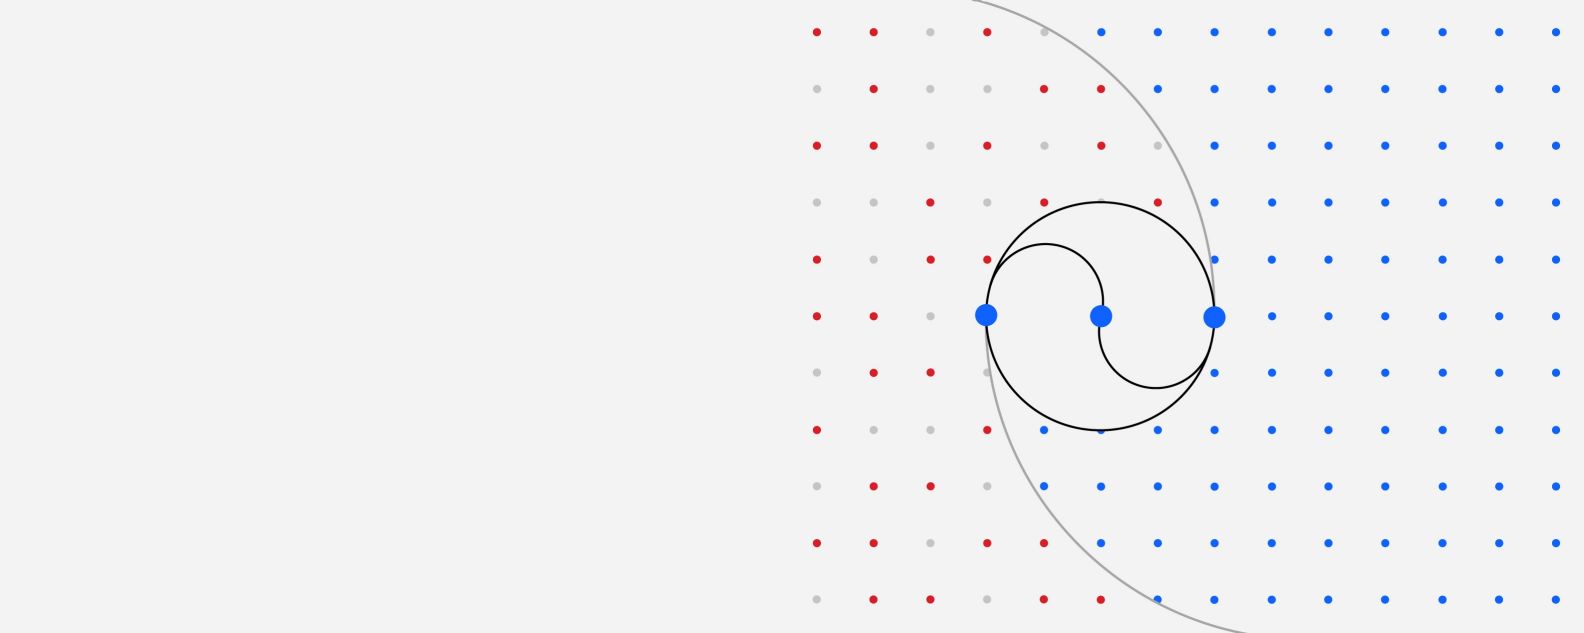 Ilustrasi kisi titik-titik berwarna yang mana tiga titik yang lebih besar dihubungkan oleh berbagai garis lengkung